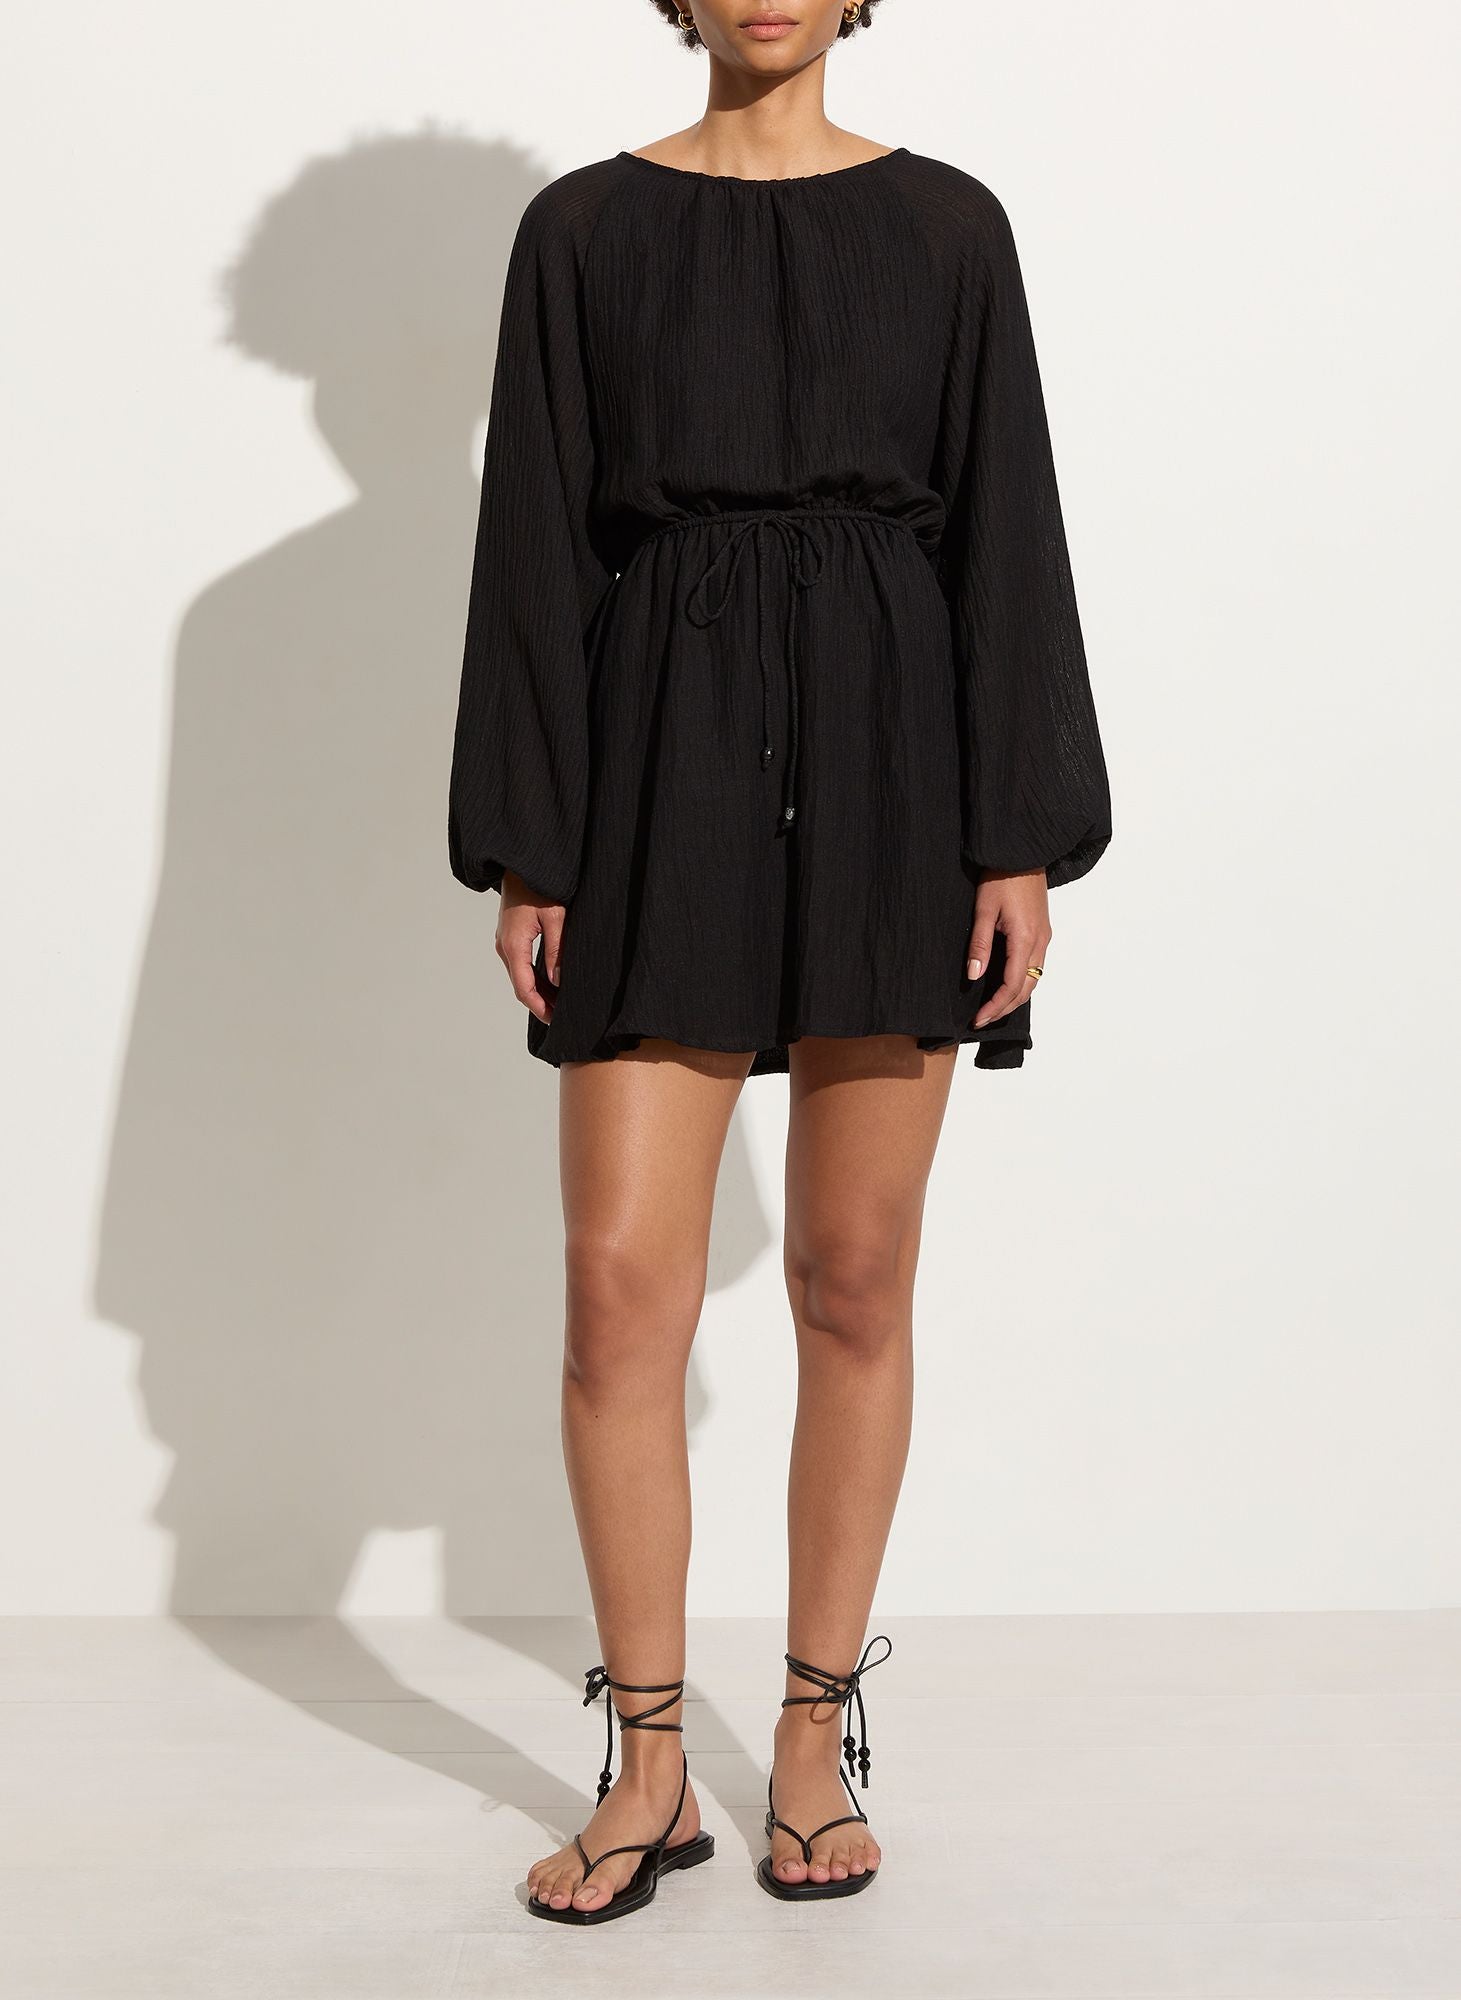 Del Rio Mini Dress - Black